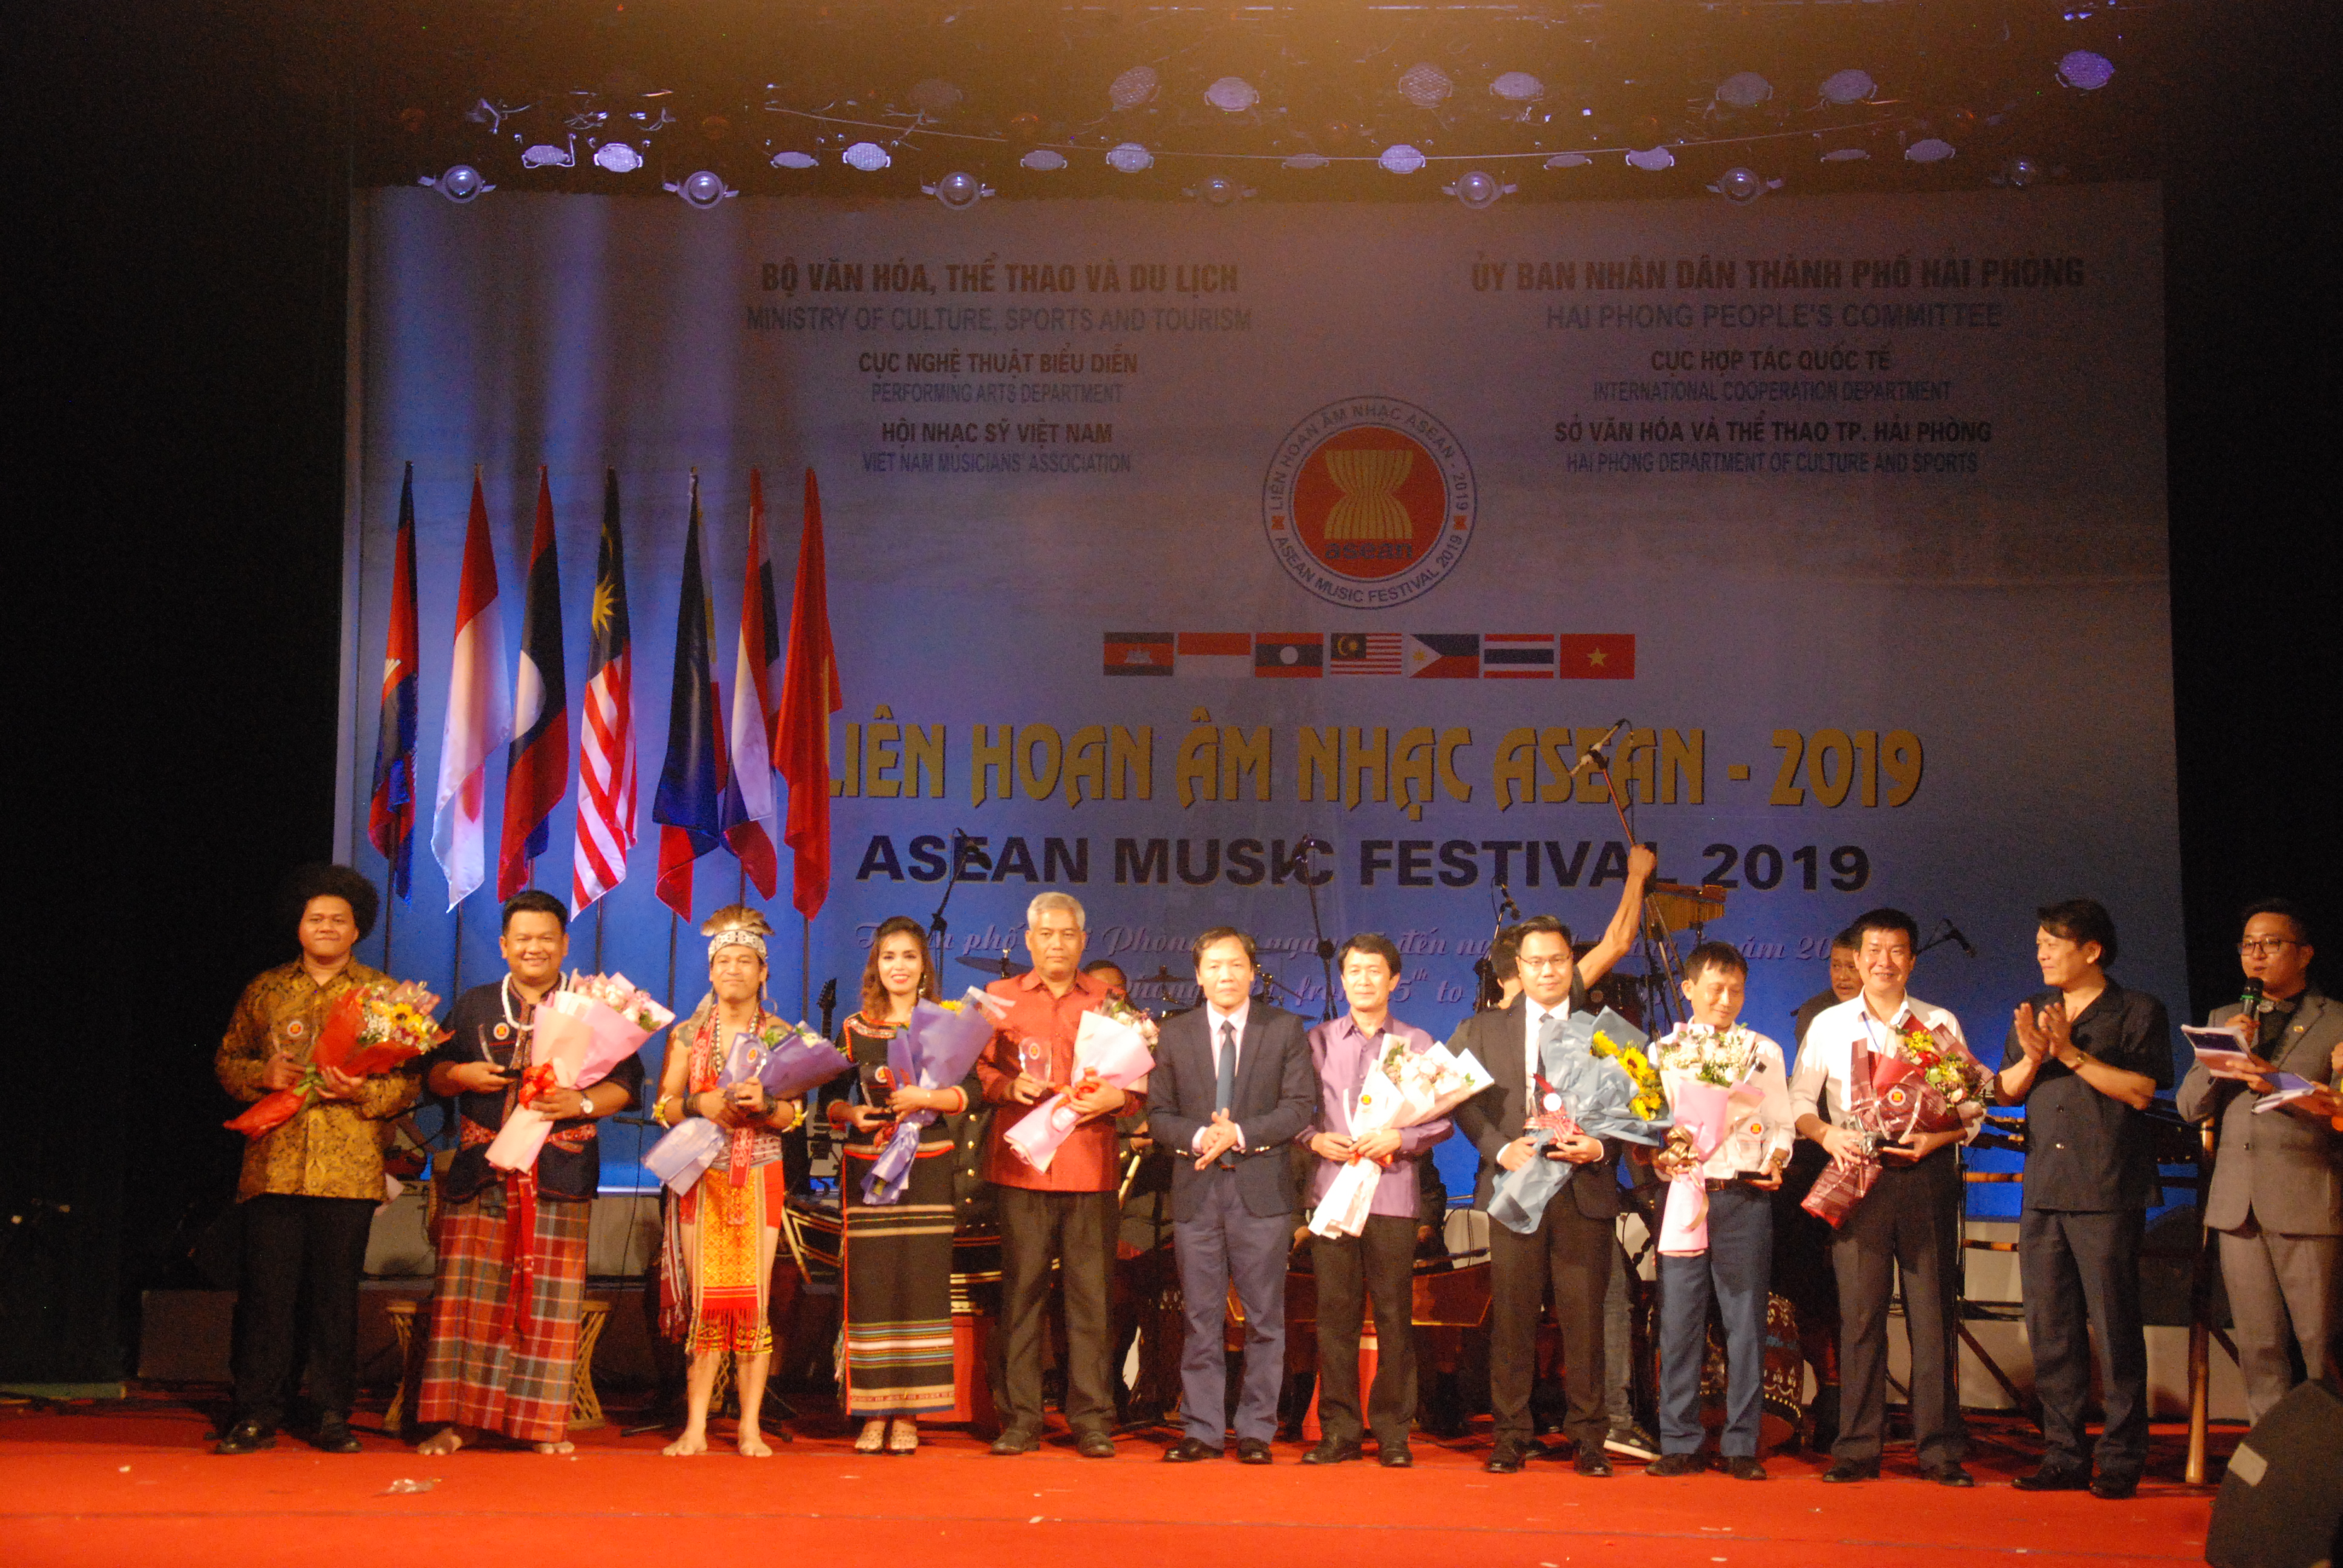 BẾ MẠC LIÊN HOAN ÂM NHẠC ASEAN 2019